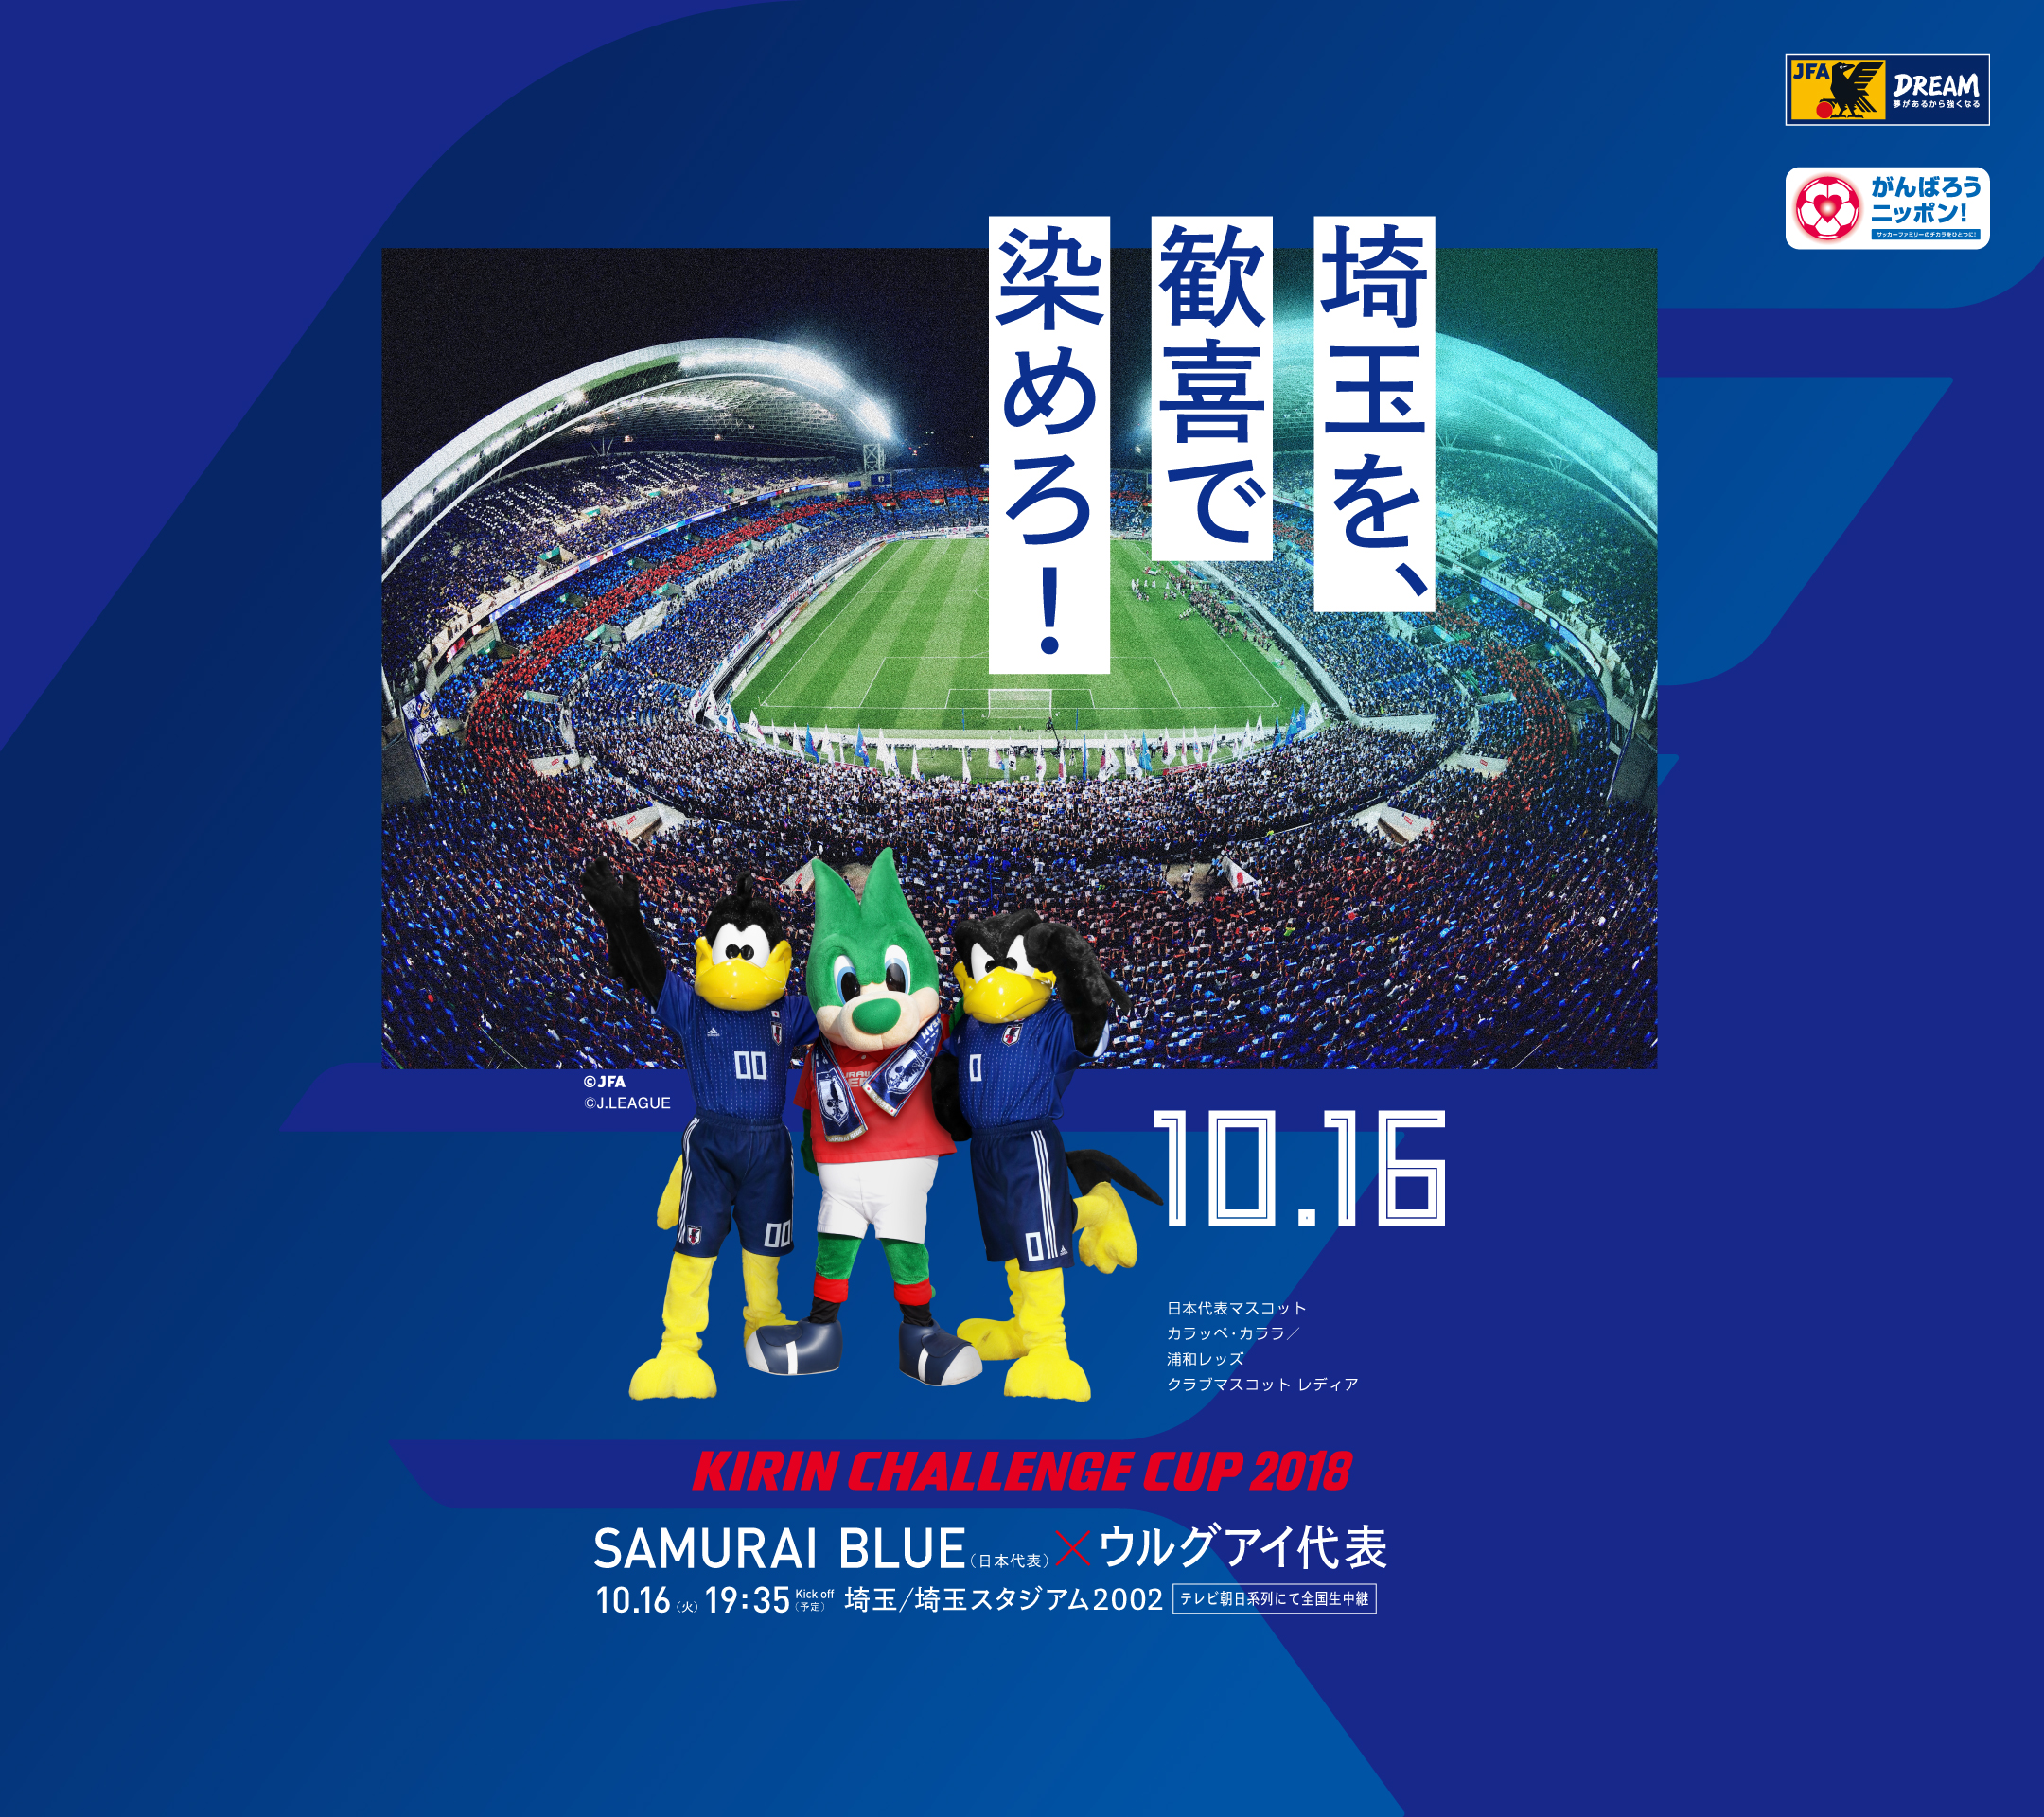 壁紙 ポスターダウンロード キリンチャレンジカップ18 10 16 Samurai Blue 日本代表 Jfa 日本サッカー協会